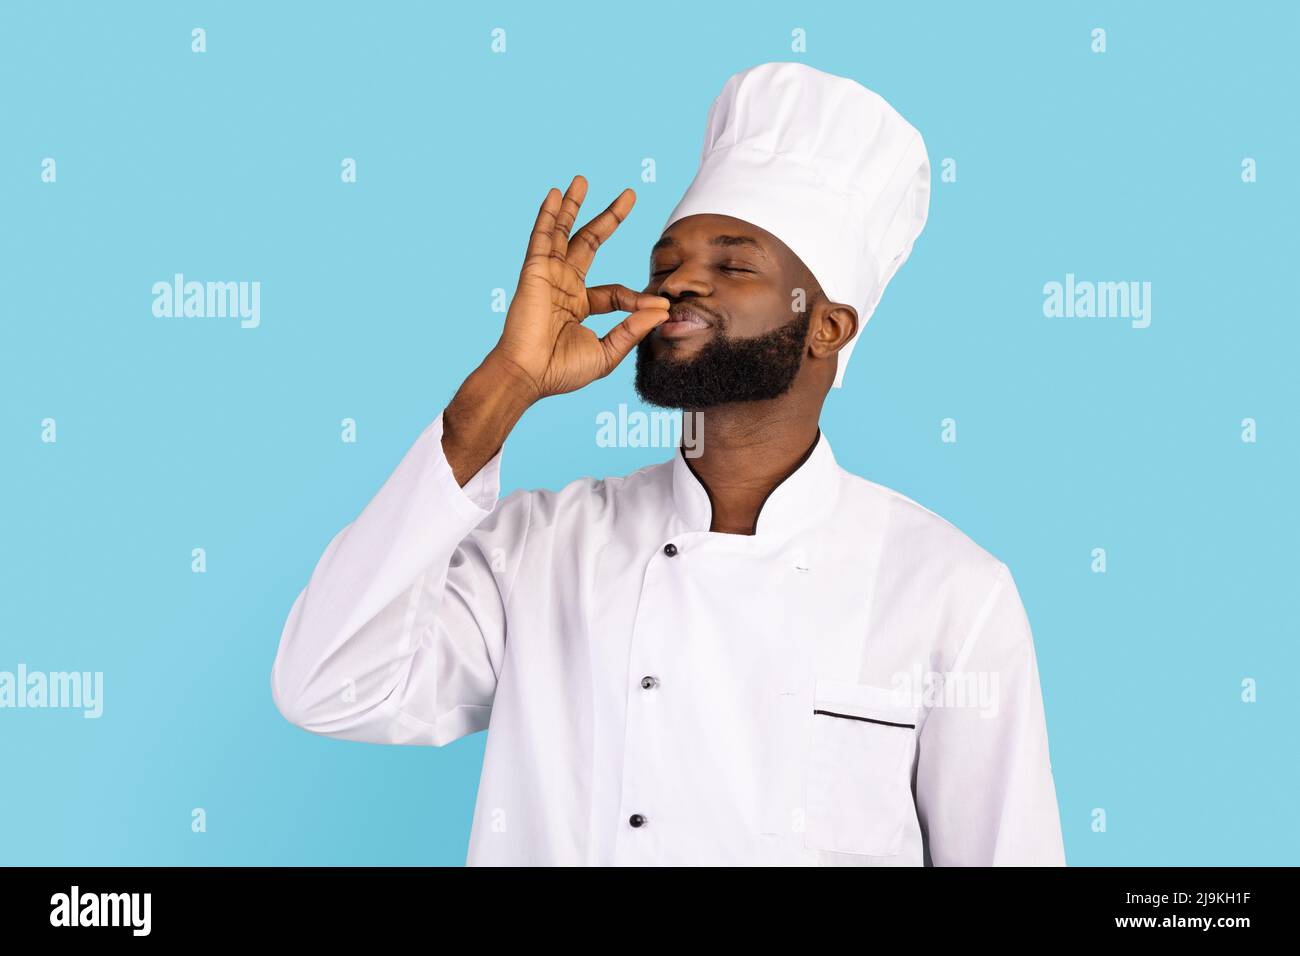 IMAGE(https://c8.alamy.com/comp/2J9KH1F/handsome-black-male-chef-in-uniform-kissing-fingers-standing-over-blue-background-2J9KH1F.jpg)